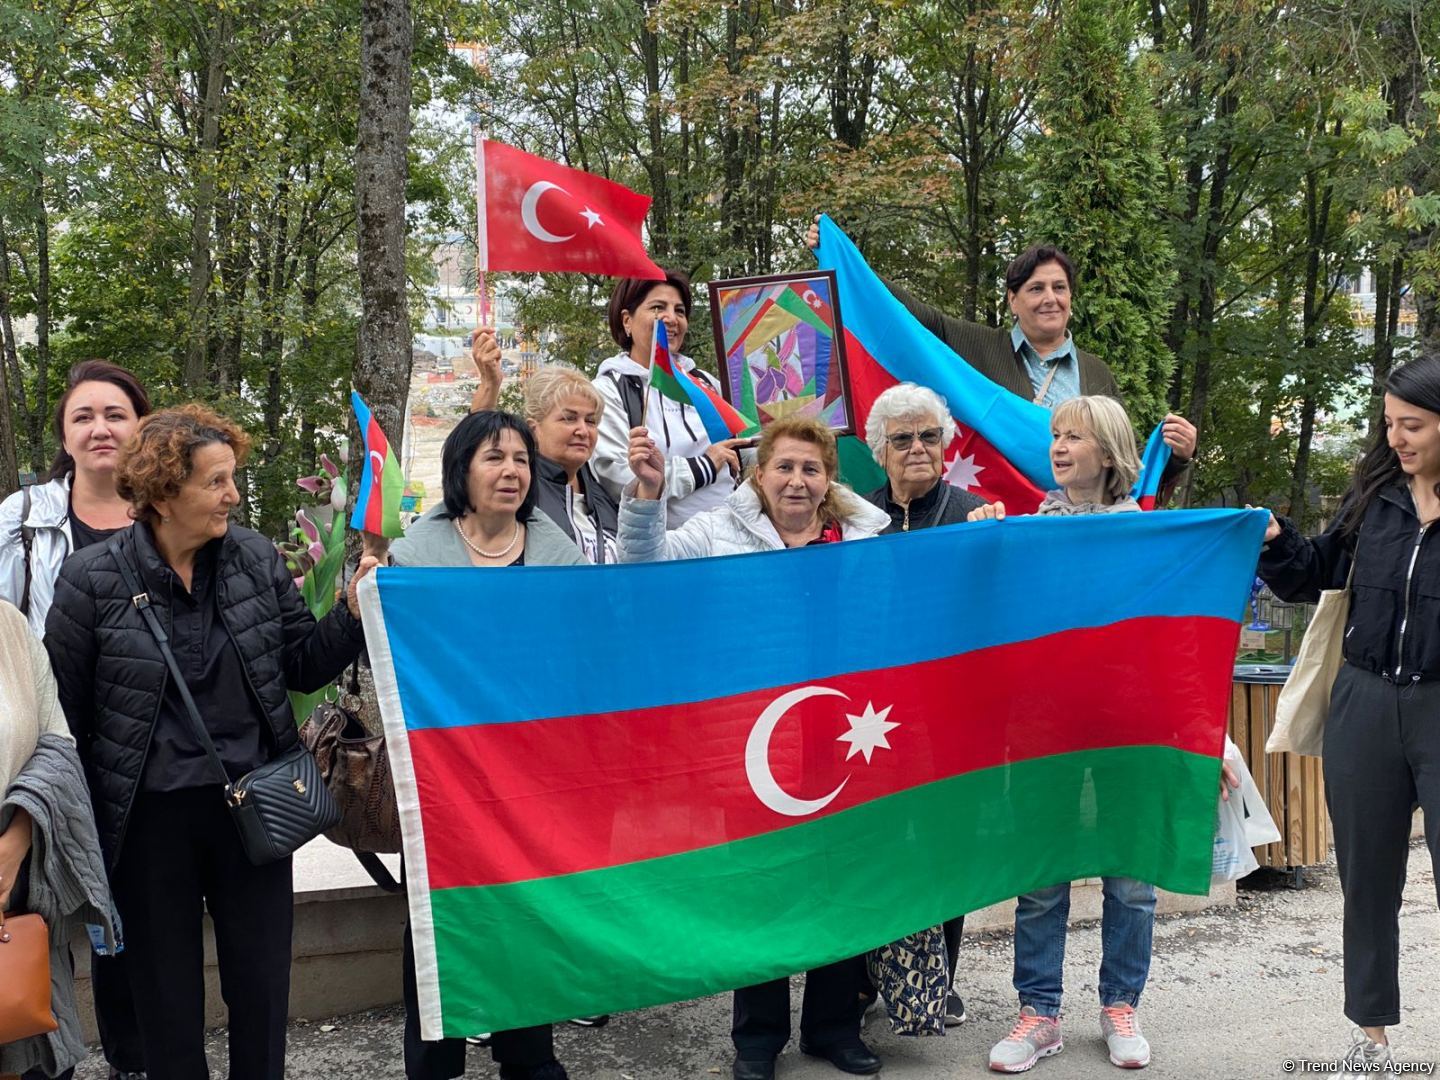 Trips of Azerbaijani NGO representatives to Shusha organized (PHOTO)